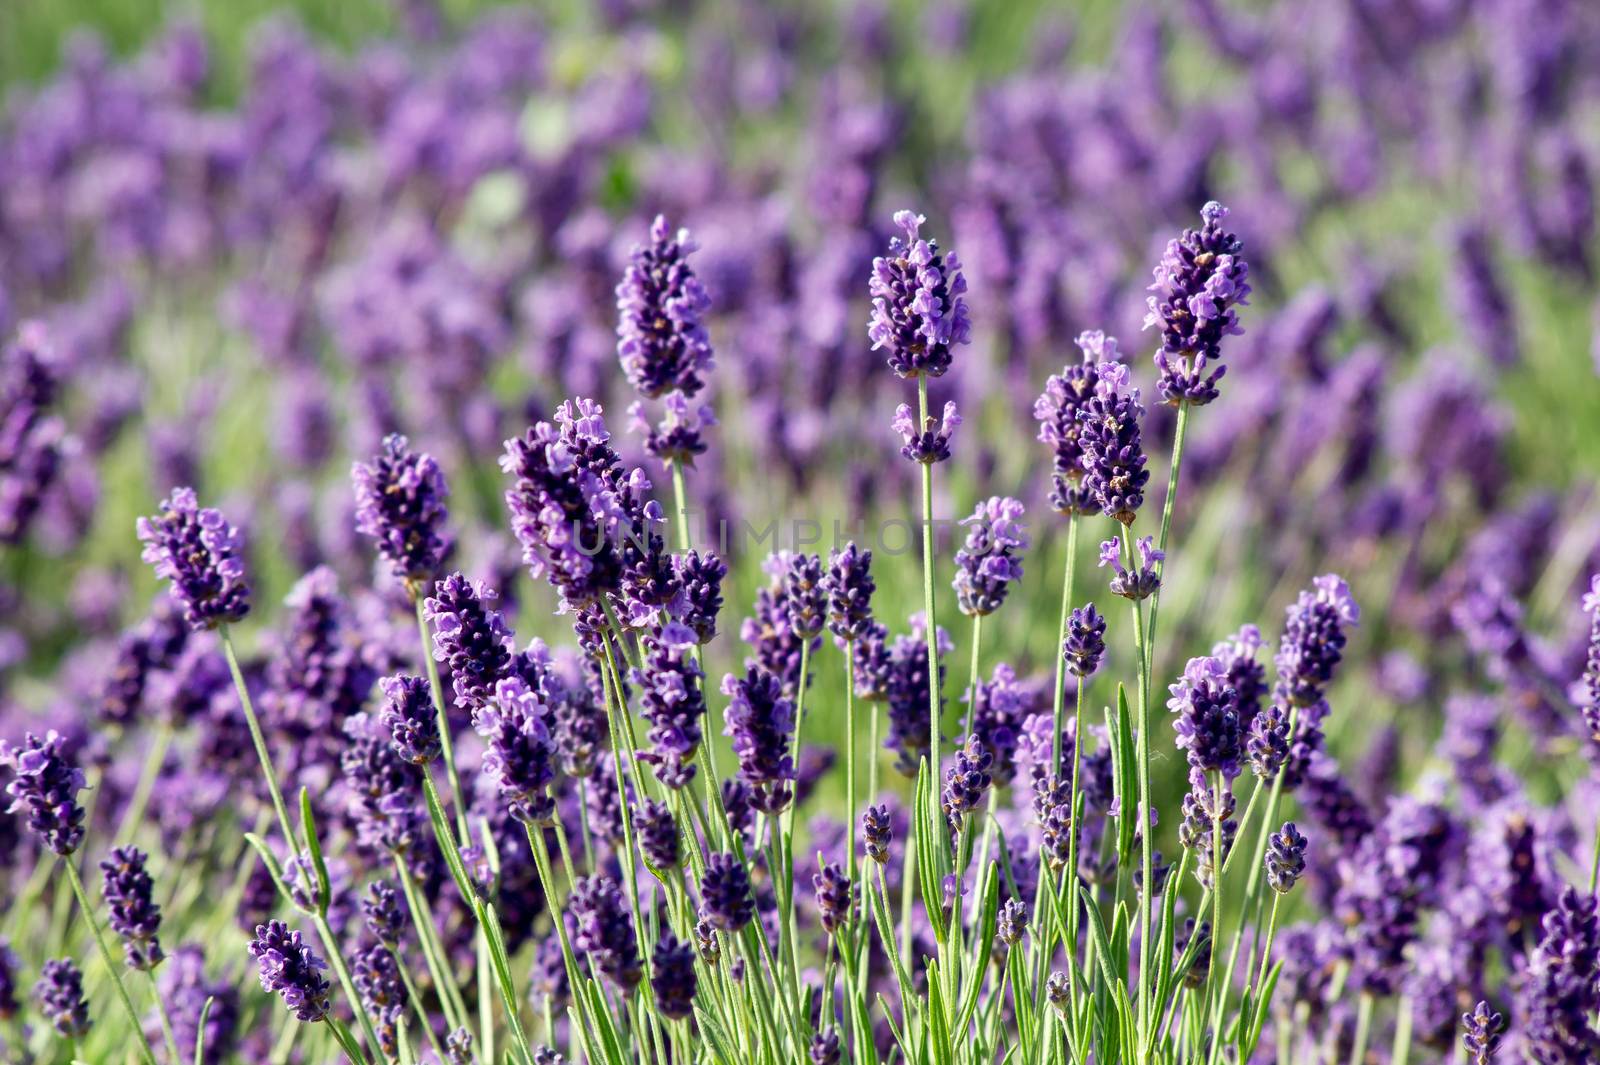 Spring, summer opening of lavender (Lavandula angustifolia).